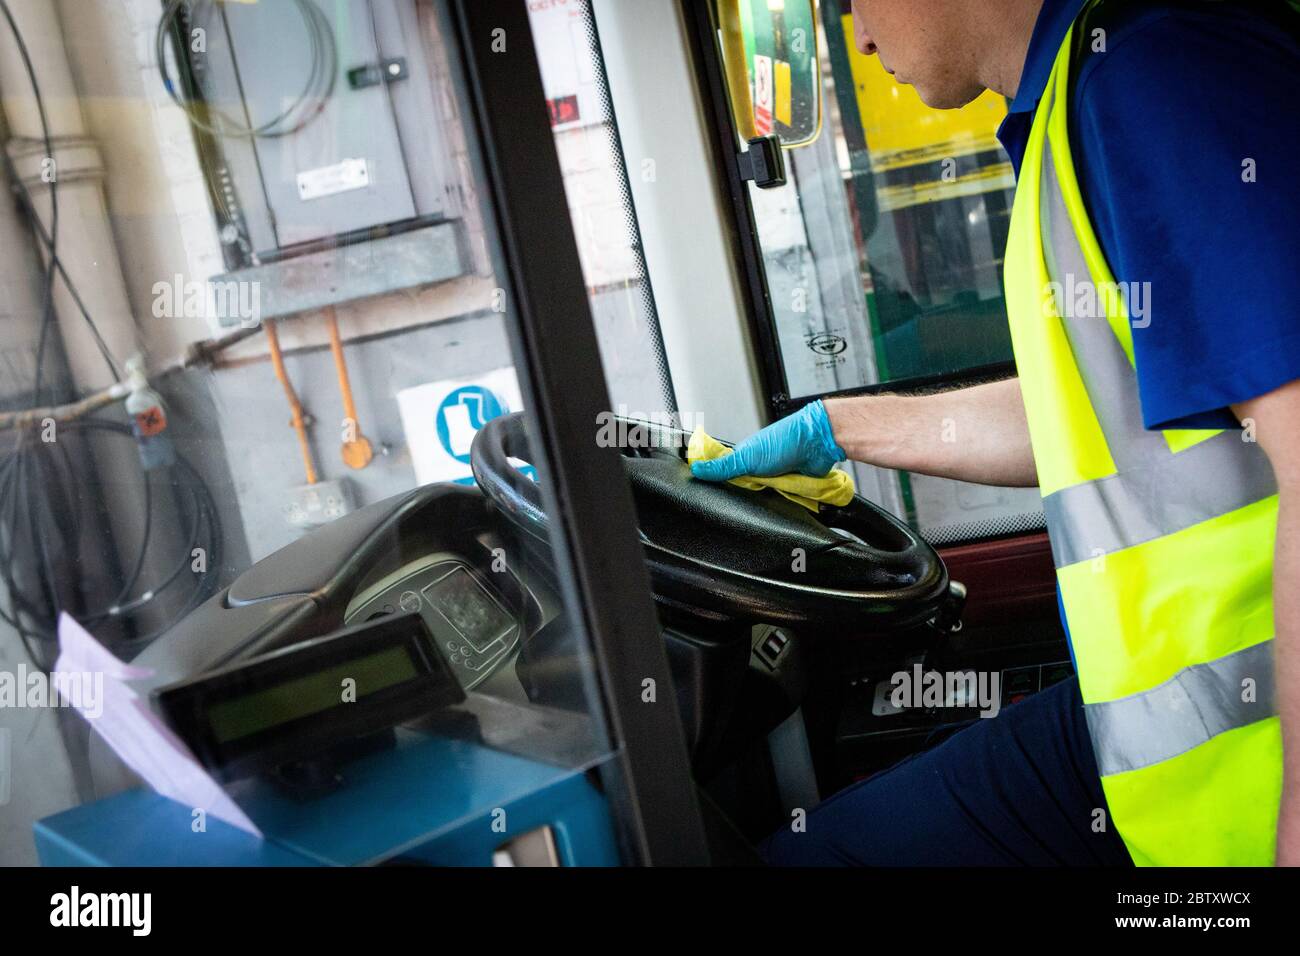 Un autobus est nettoyé quotidiennement par un agent nettoyant au garage Camberwell pendant l'épidémie de COVID-19. Londres, Royaume-Uni. Mai 2020. Banque D'Images